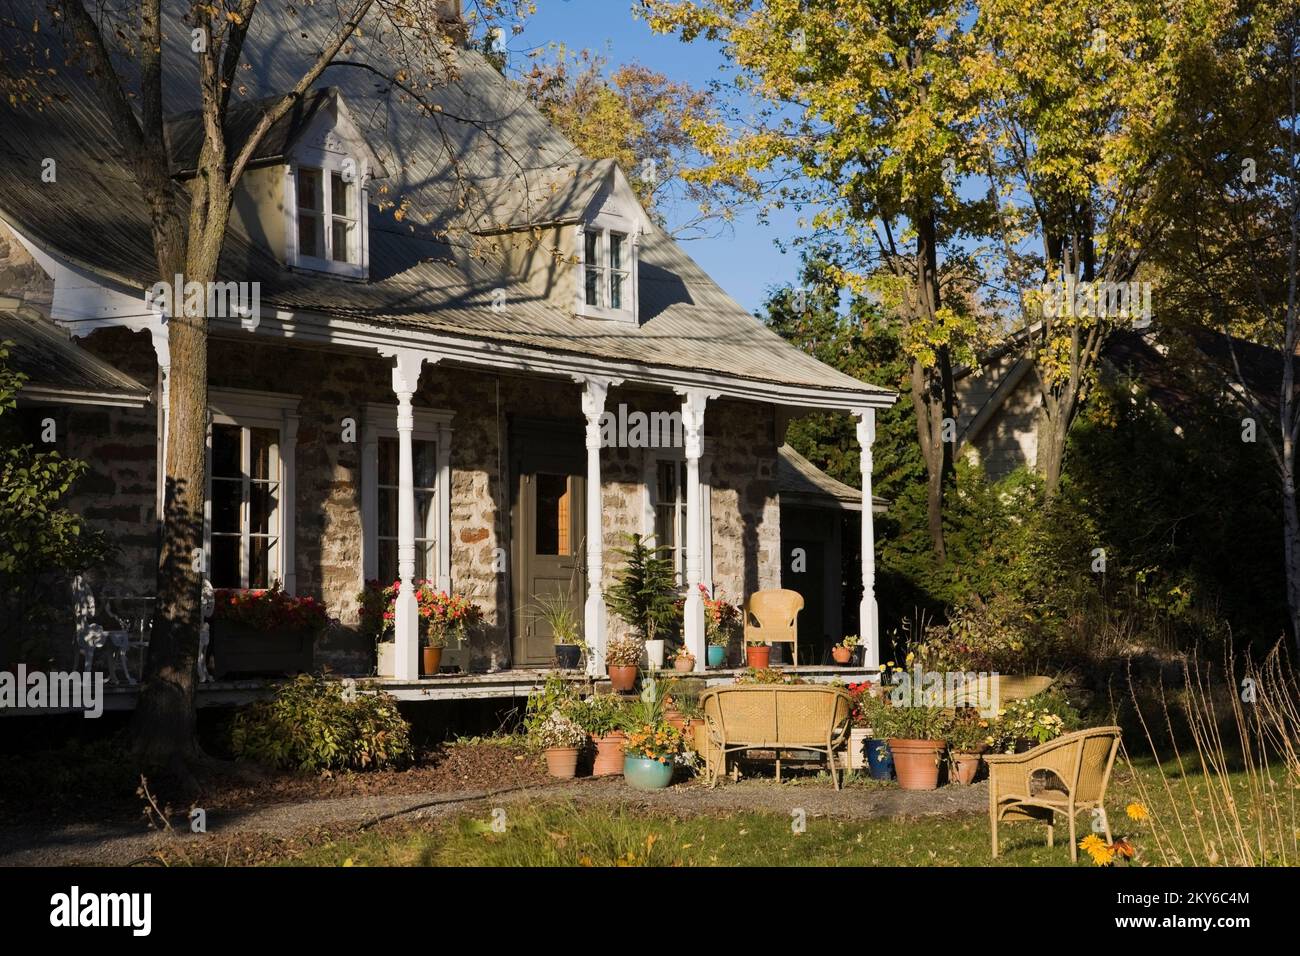 Vecchia casa a due piani 1700s con giardino paesaggistico e mobili da giardino in vimini in autunno. Foto Stock